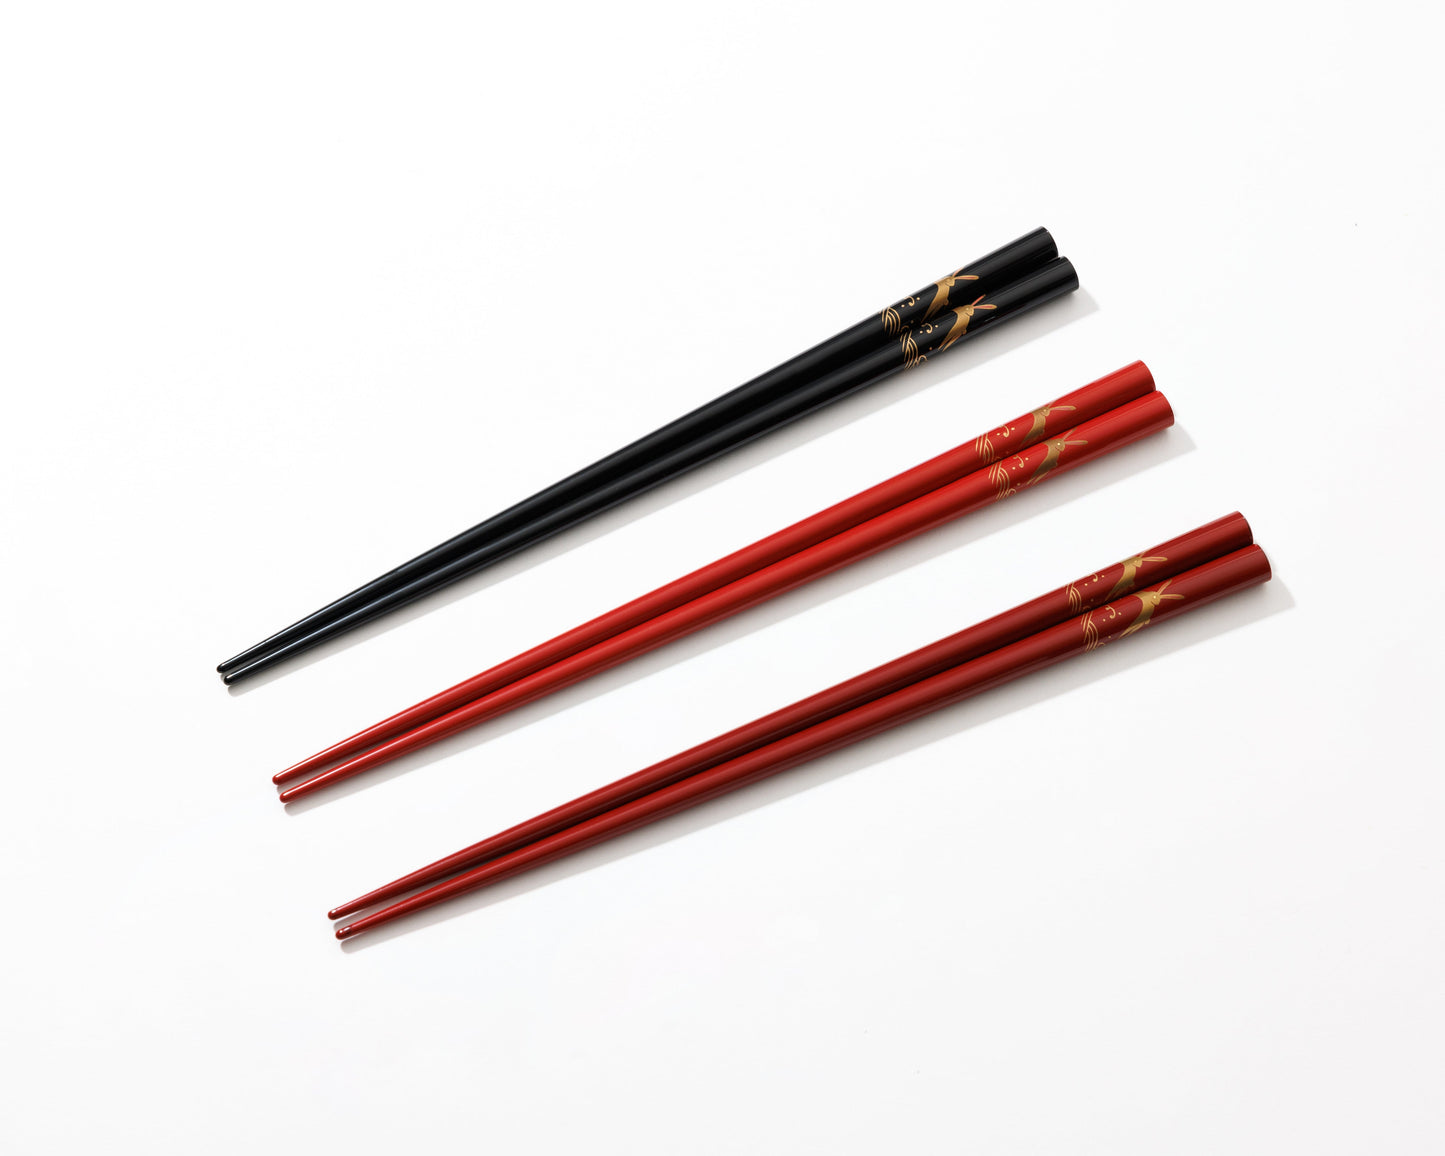 Wajimaya Zenni original chopsticks - (Tame/Hato)